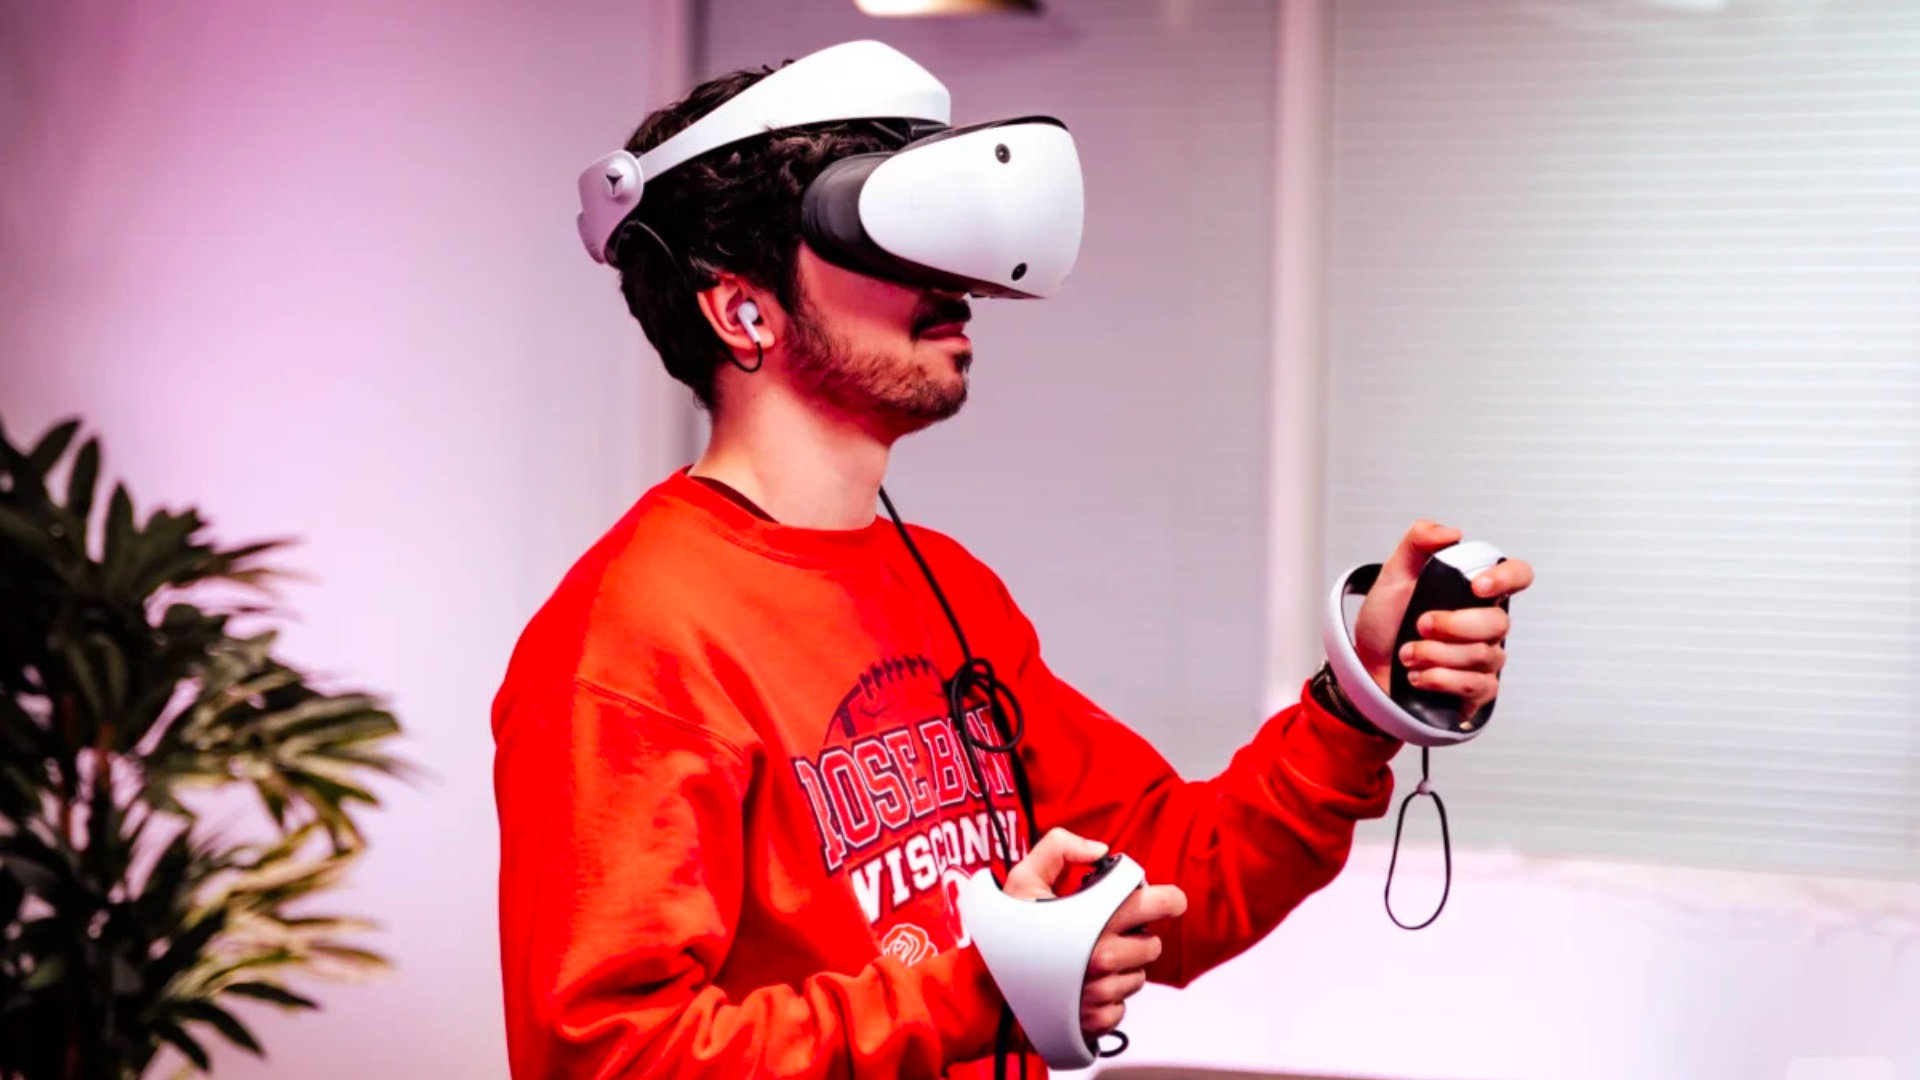 Le casque PlayStation VR2 plus cher que la PS5 - Le Matin